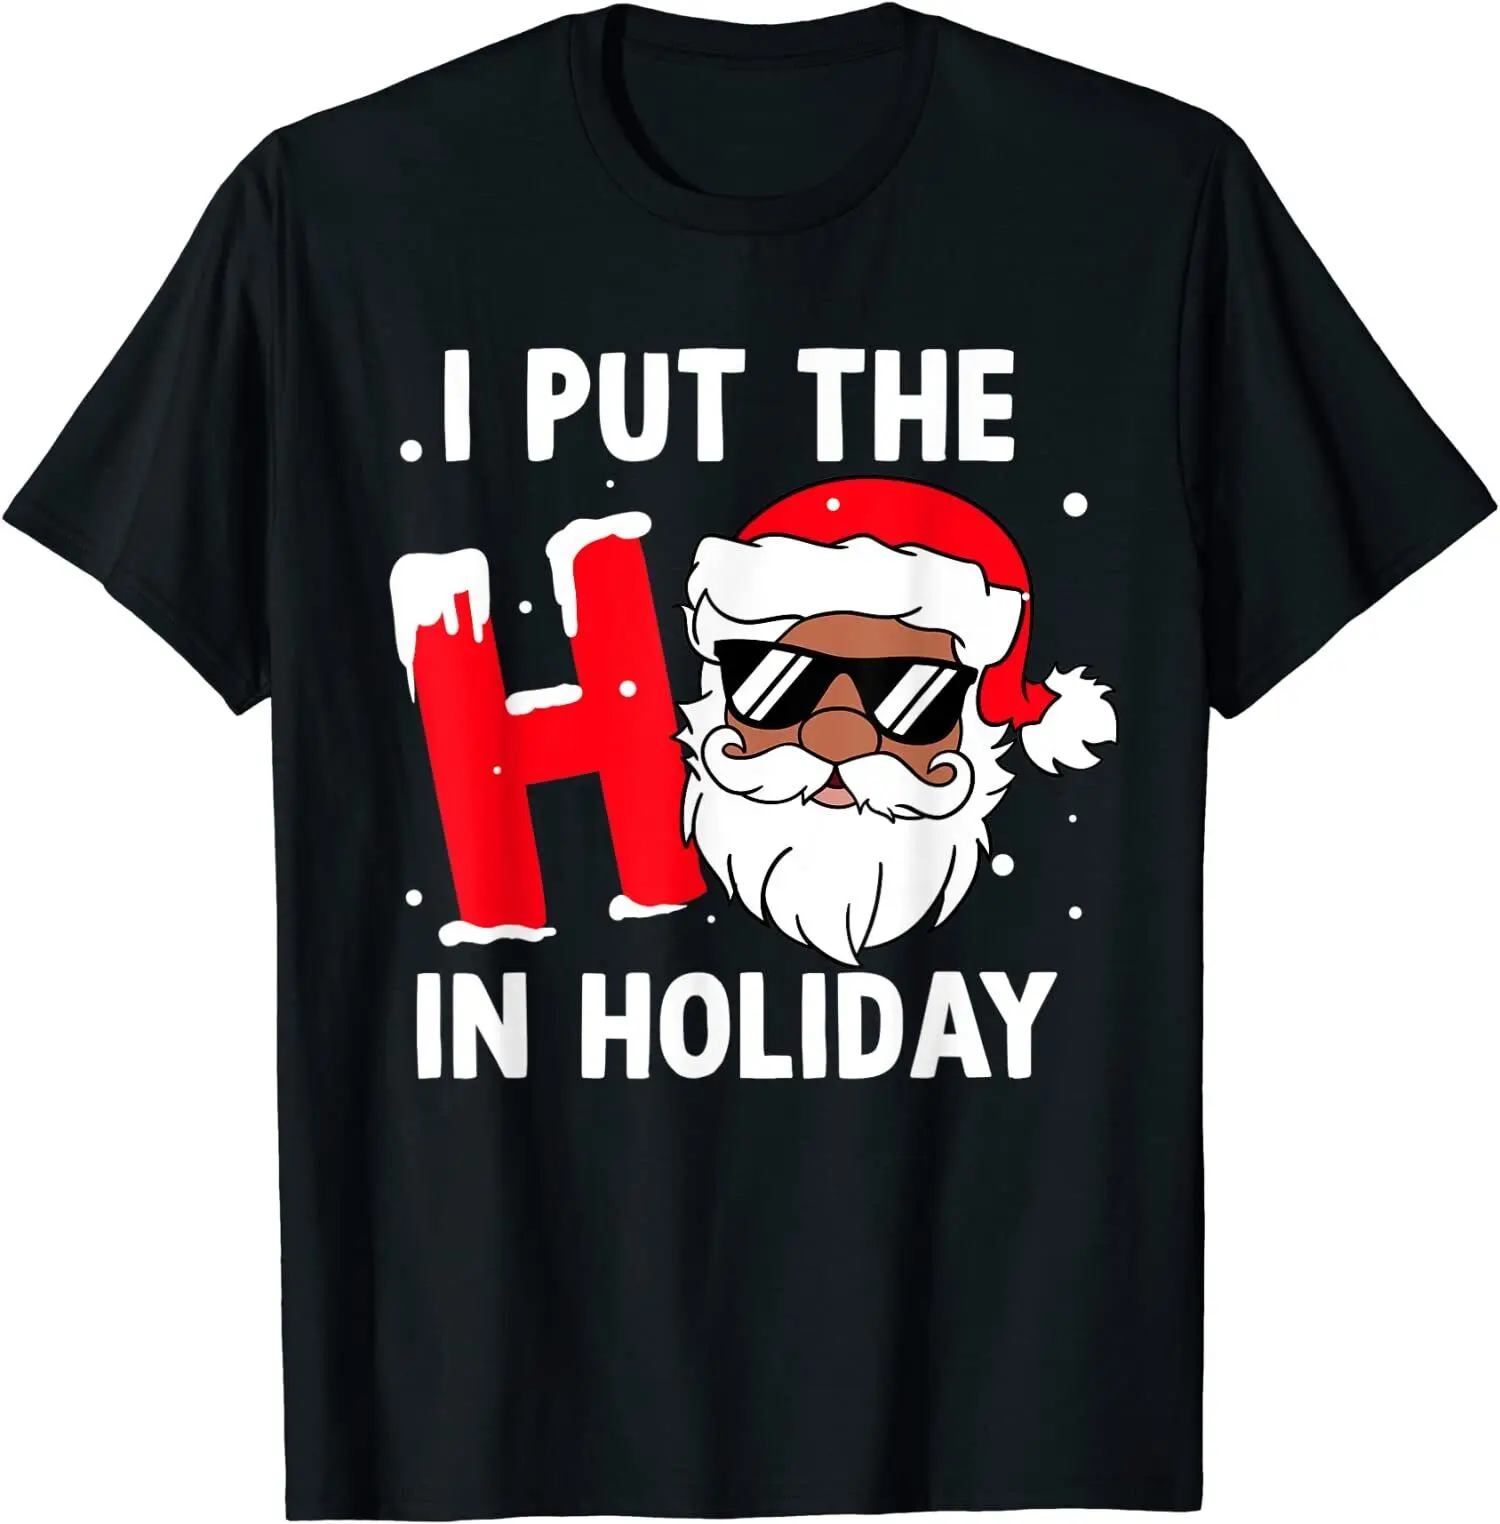 Retro Christmas Xmas I Put The Japanese Clothes High Quality T-shirt Print T Shirt Fashion Men T-shirt Streetwear Funny Tshirt